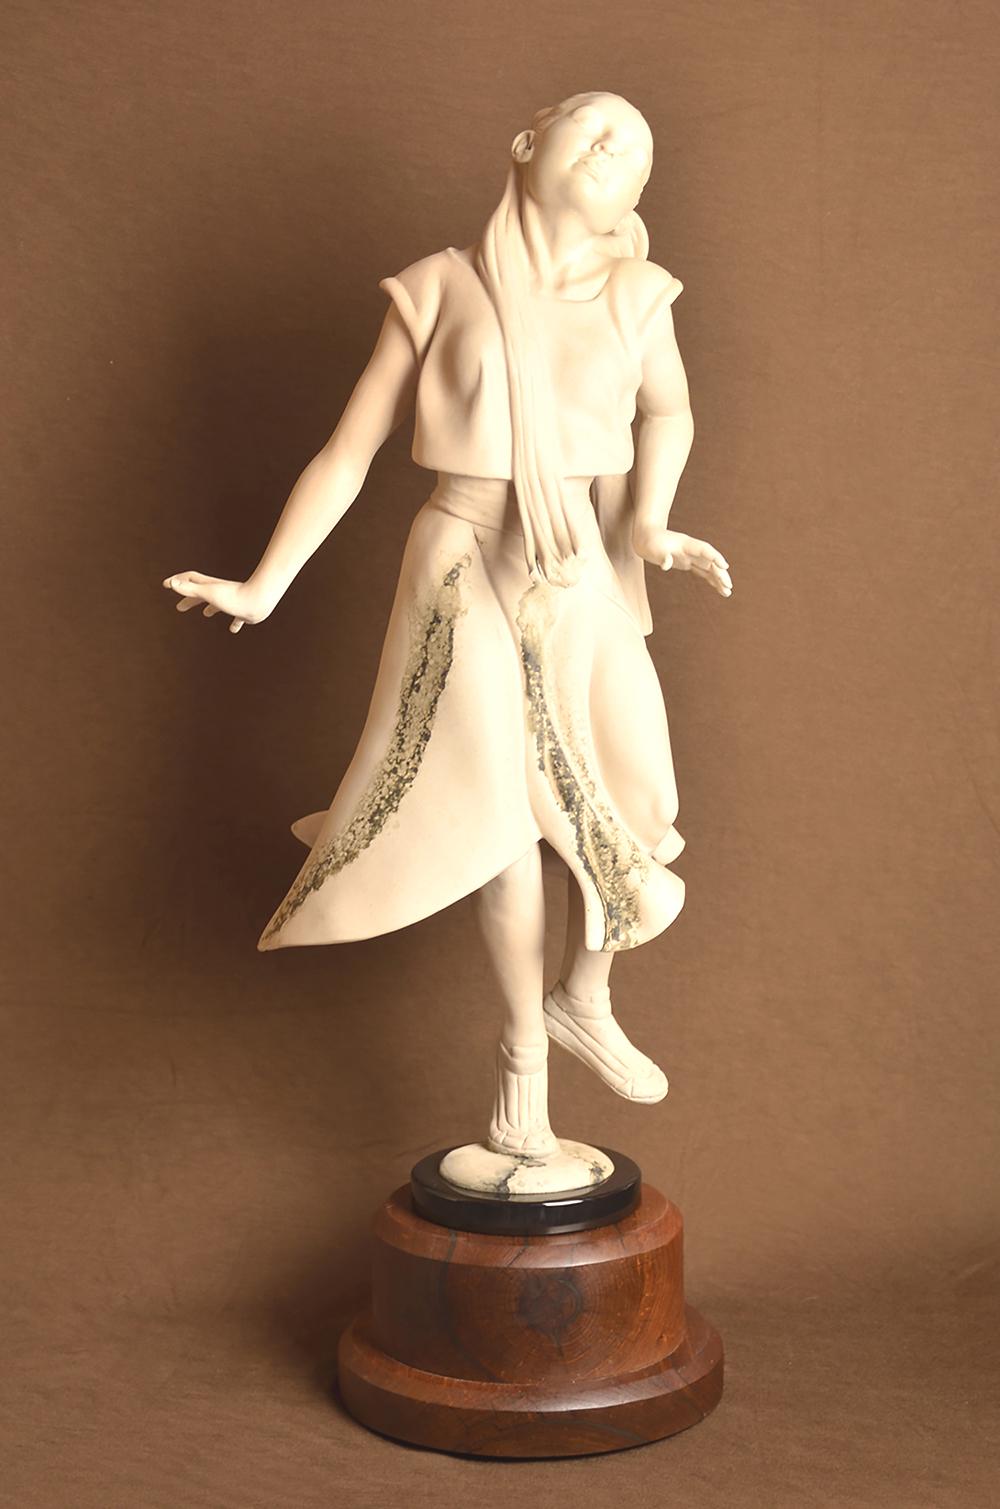 John Bennett Figurative Sculpture - "WINGS FROM HER PRAYERS" BRONZE SCULPTURE